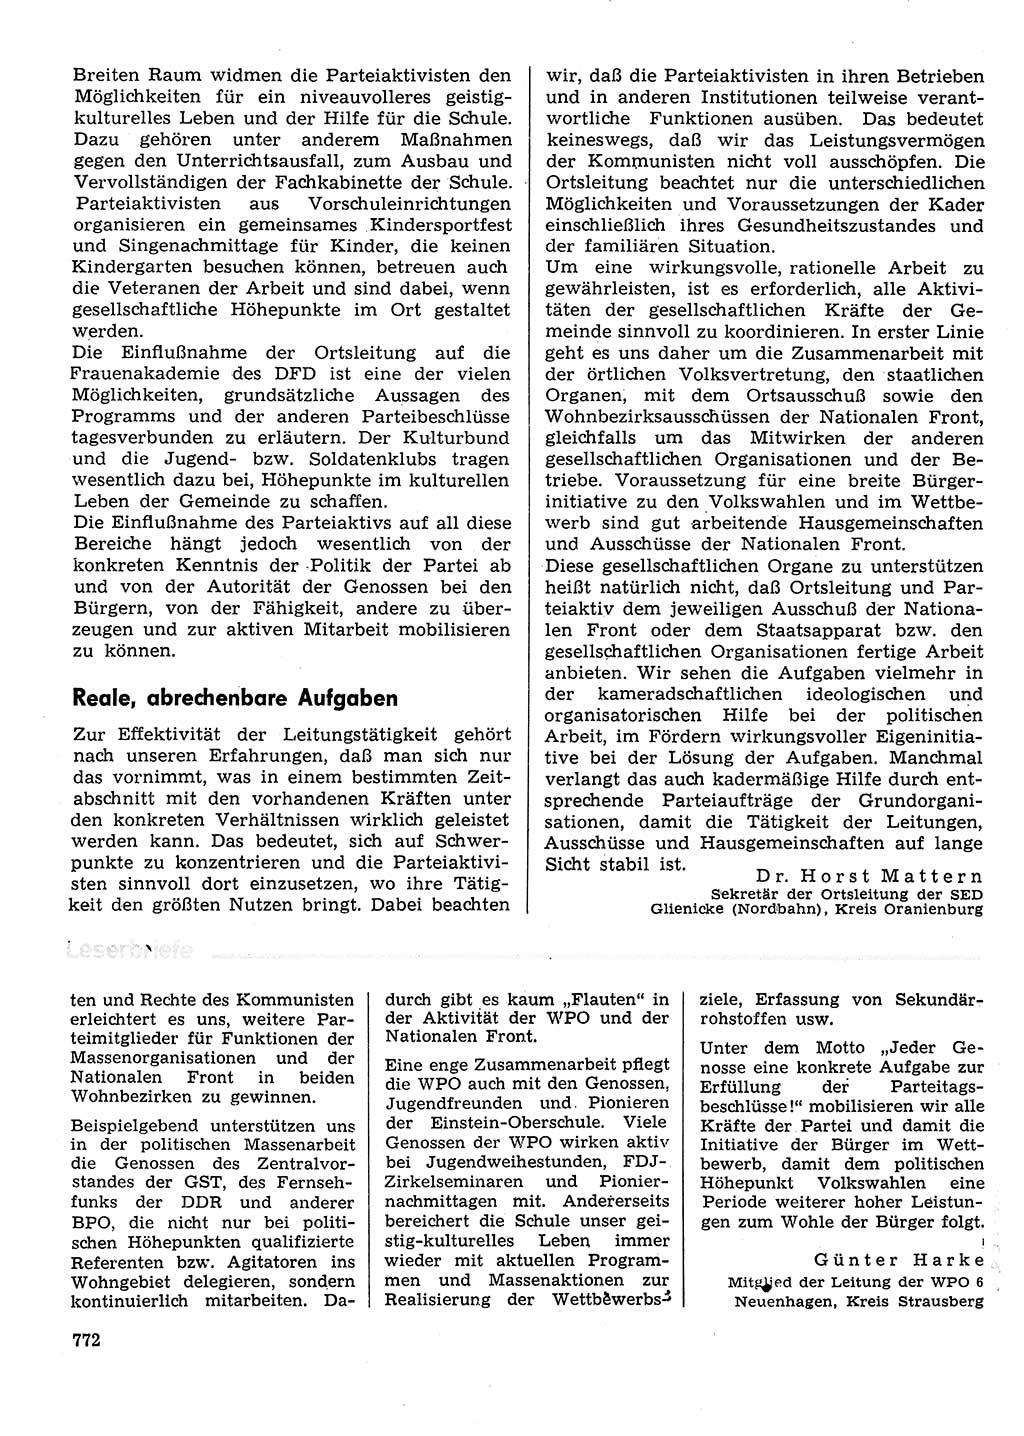 Neuer Weg (NW), Organ des Zentralkomitees (ZK) der SED (Sozialistische Einheitspartei Deutschlands) für Fragen des Parteilebens, 31. Jahrgang [Deutsche Demokratische Republik (DDR)] 1976, Seite 772 (NW ZK SED DDR 1976, S. 772)